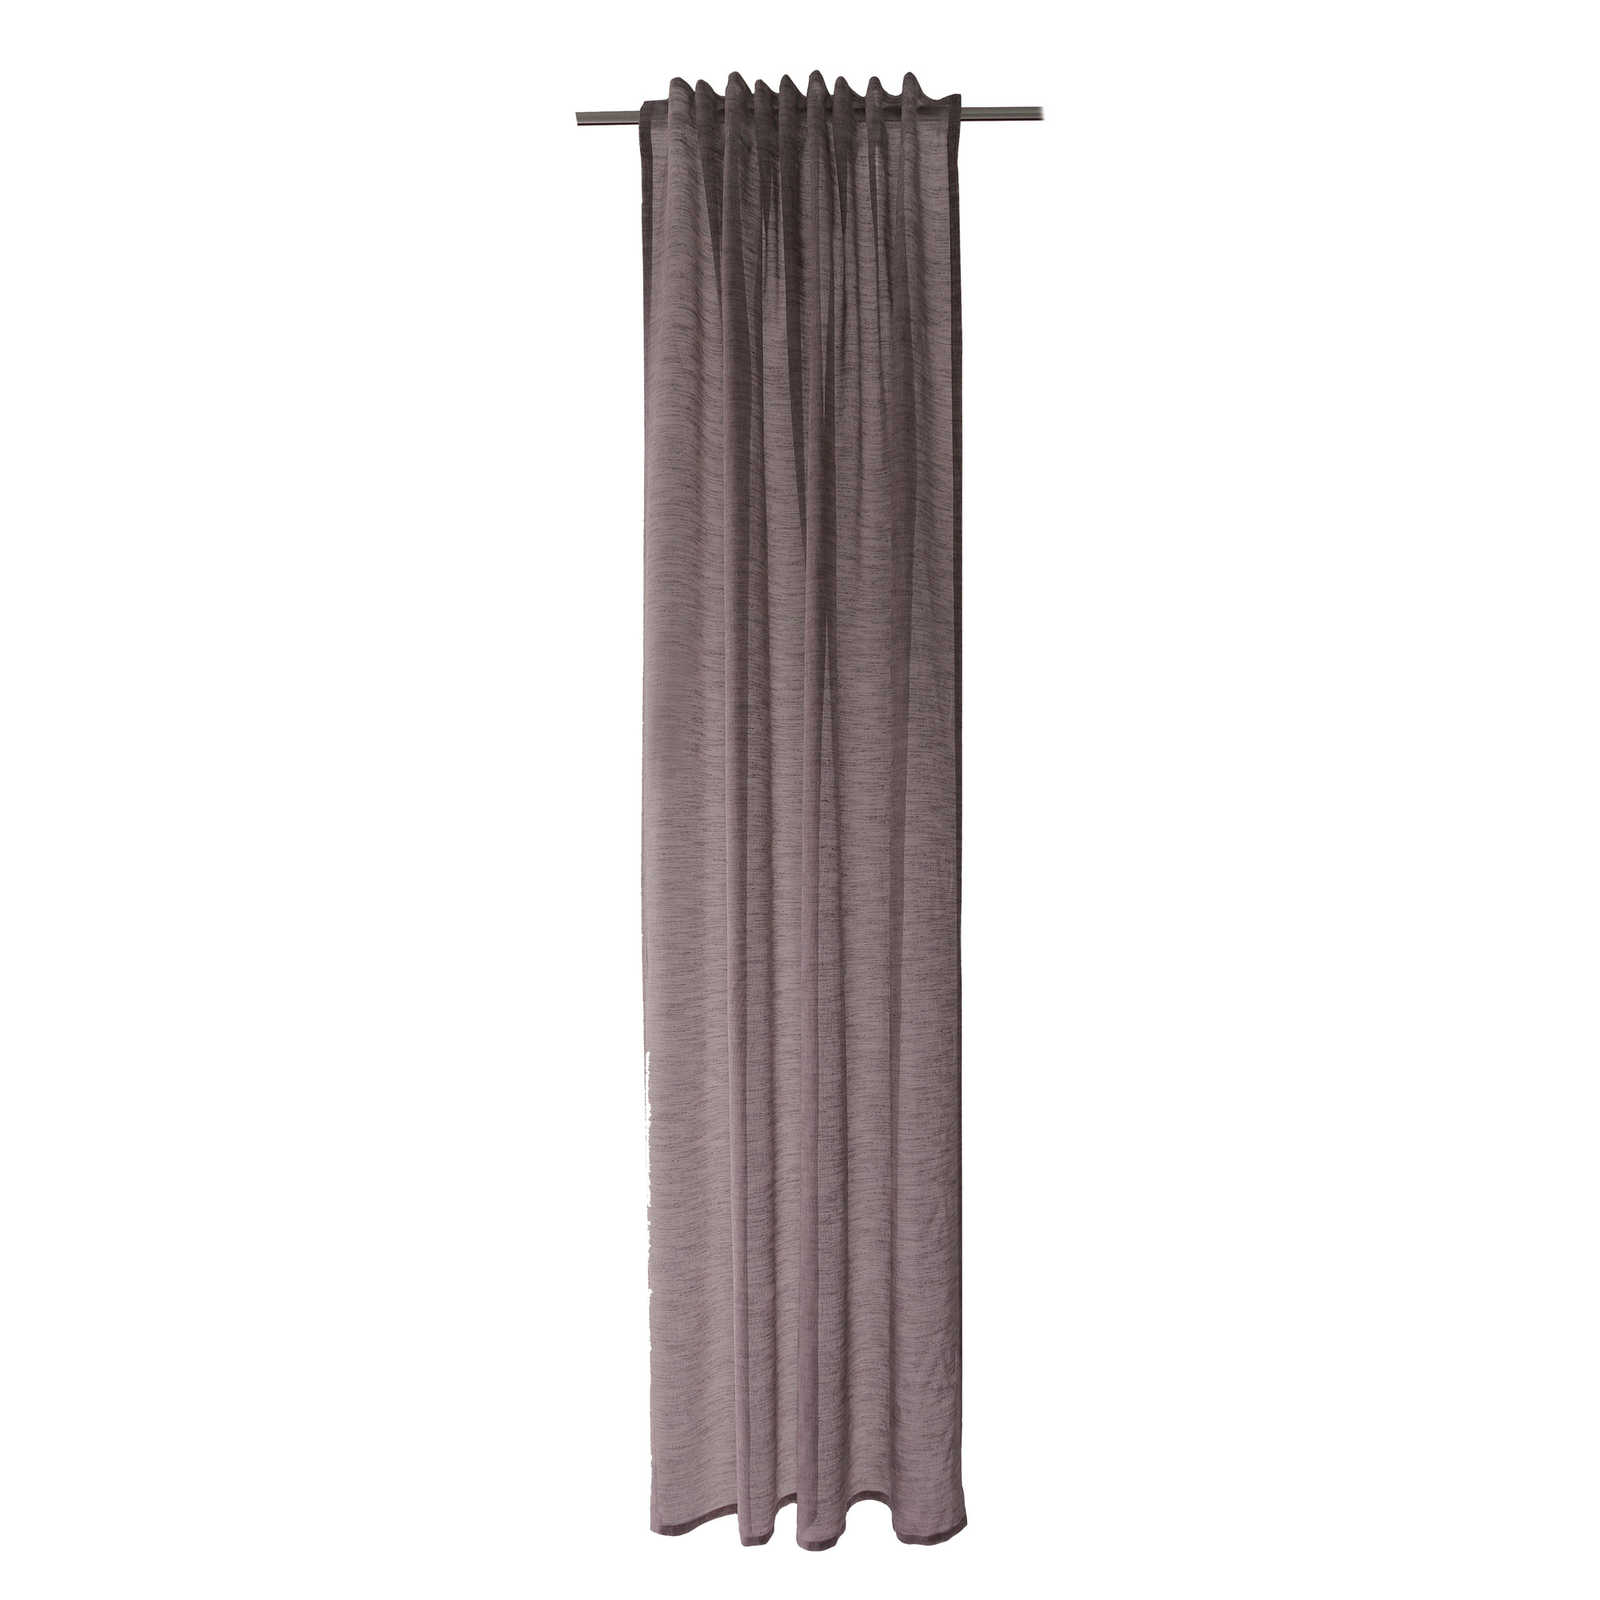         Decorative loop scarf 140 cm x 245 cm synthetic fibre mauve purple
    